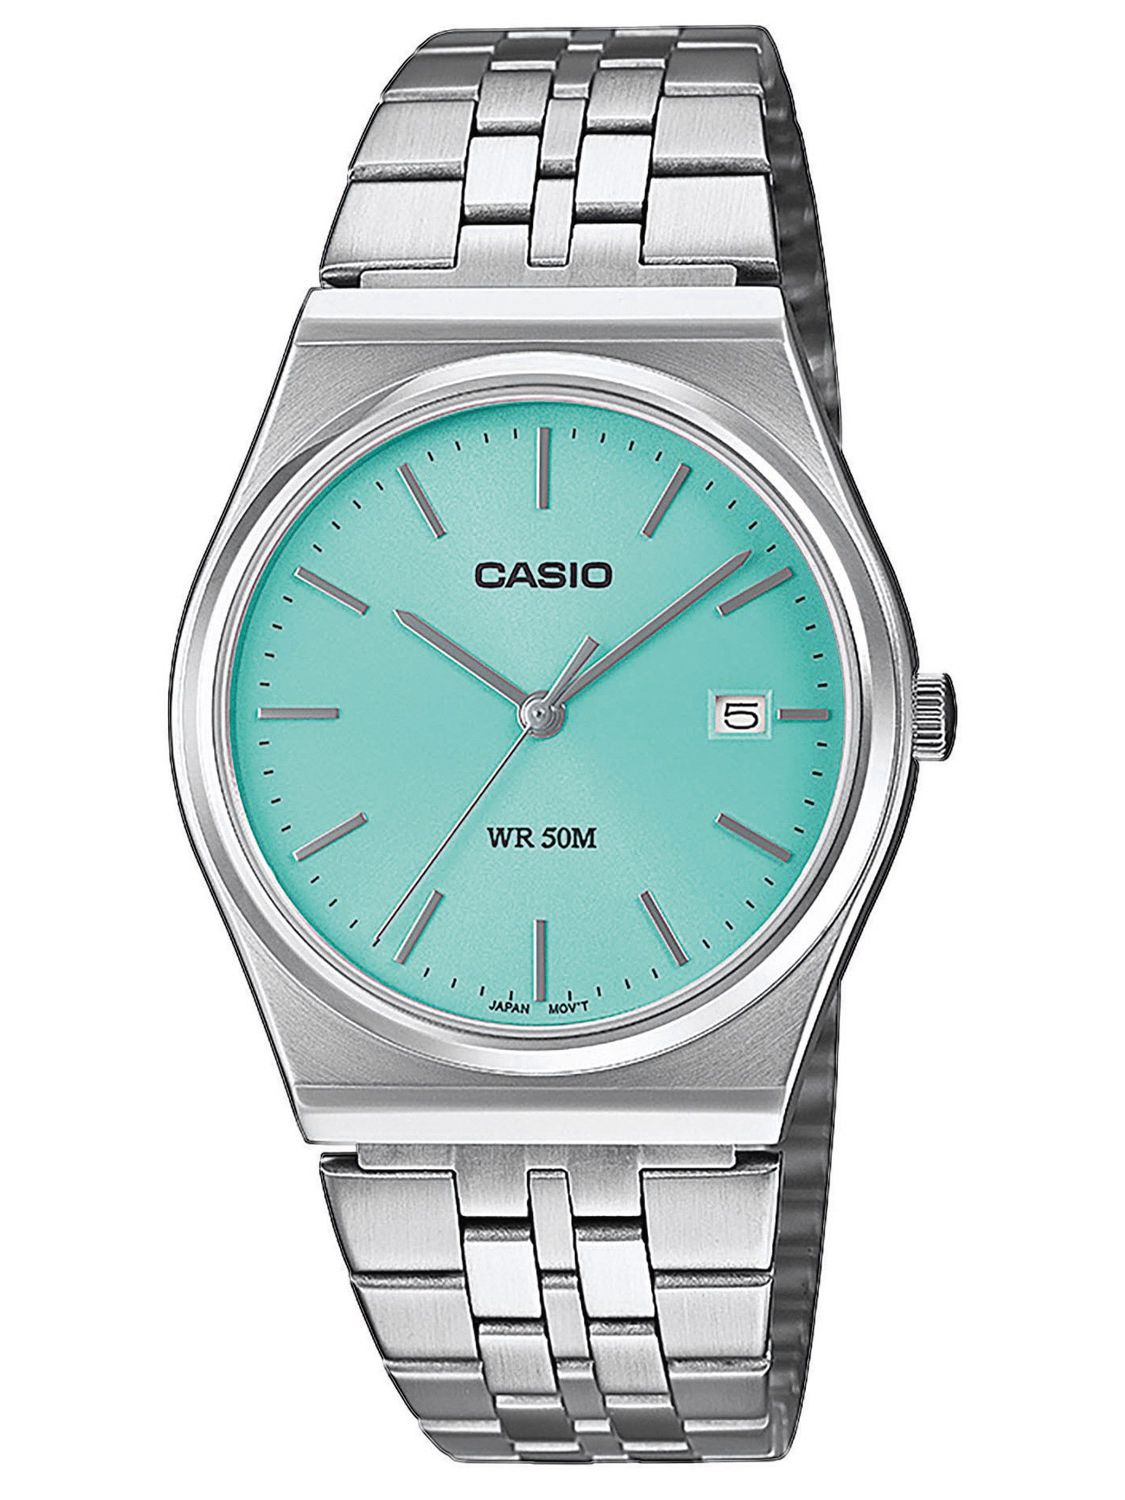 Casio Men\'s Watch Quartz Steel/Turquoise MTP-B145D-2A1VEF • uhrcenter